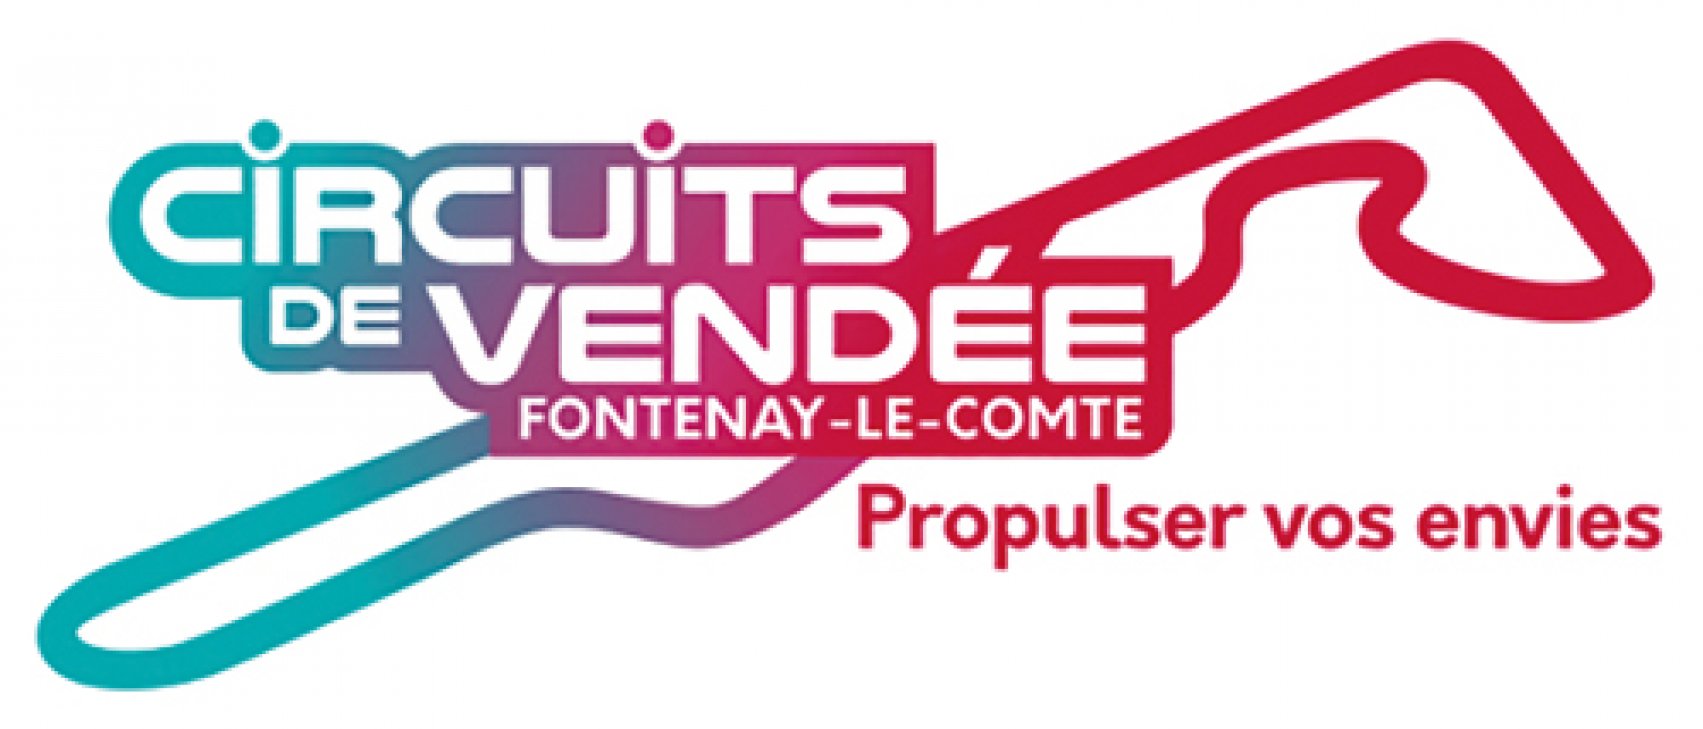 TVE - Circuits de Vendée - Fontenay le Comte - Journée mobilité durable Vendée Energie Tour